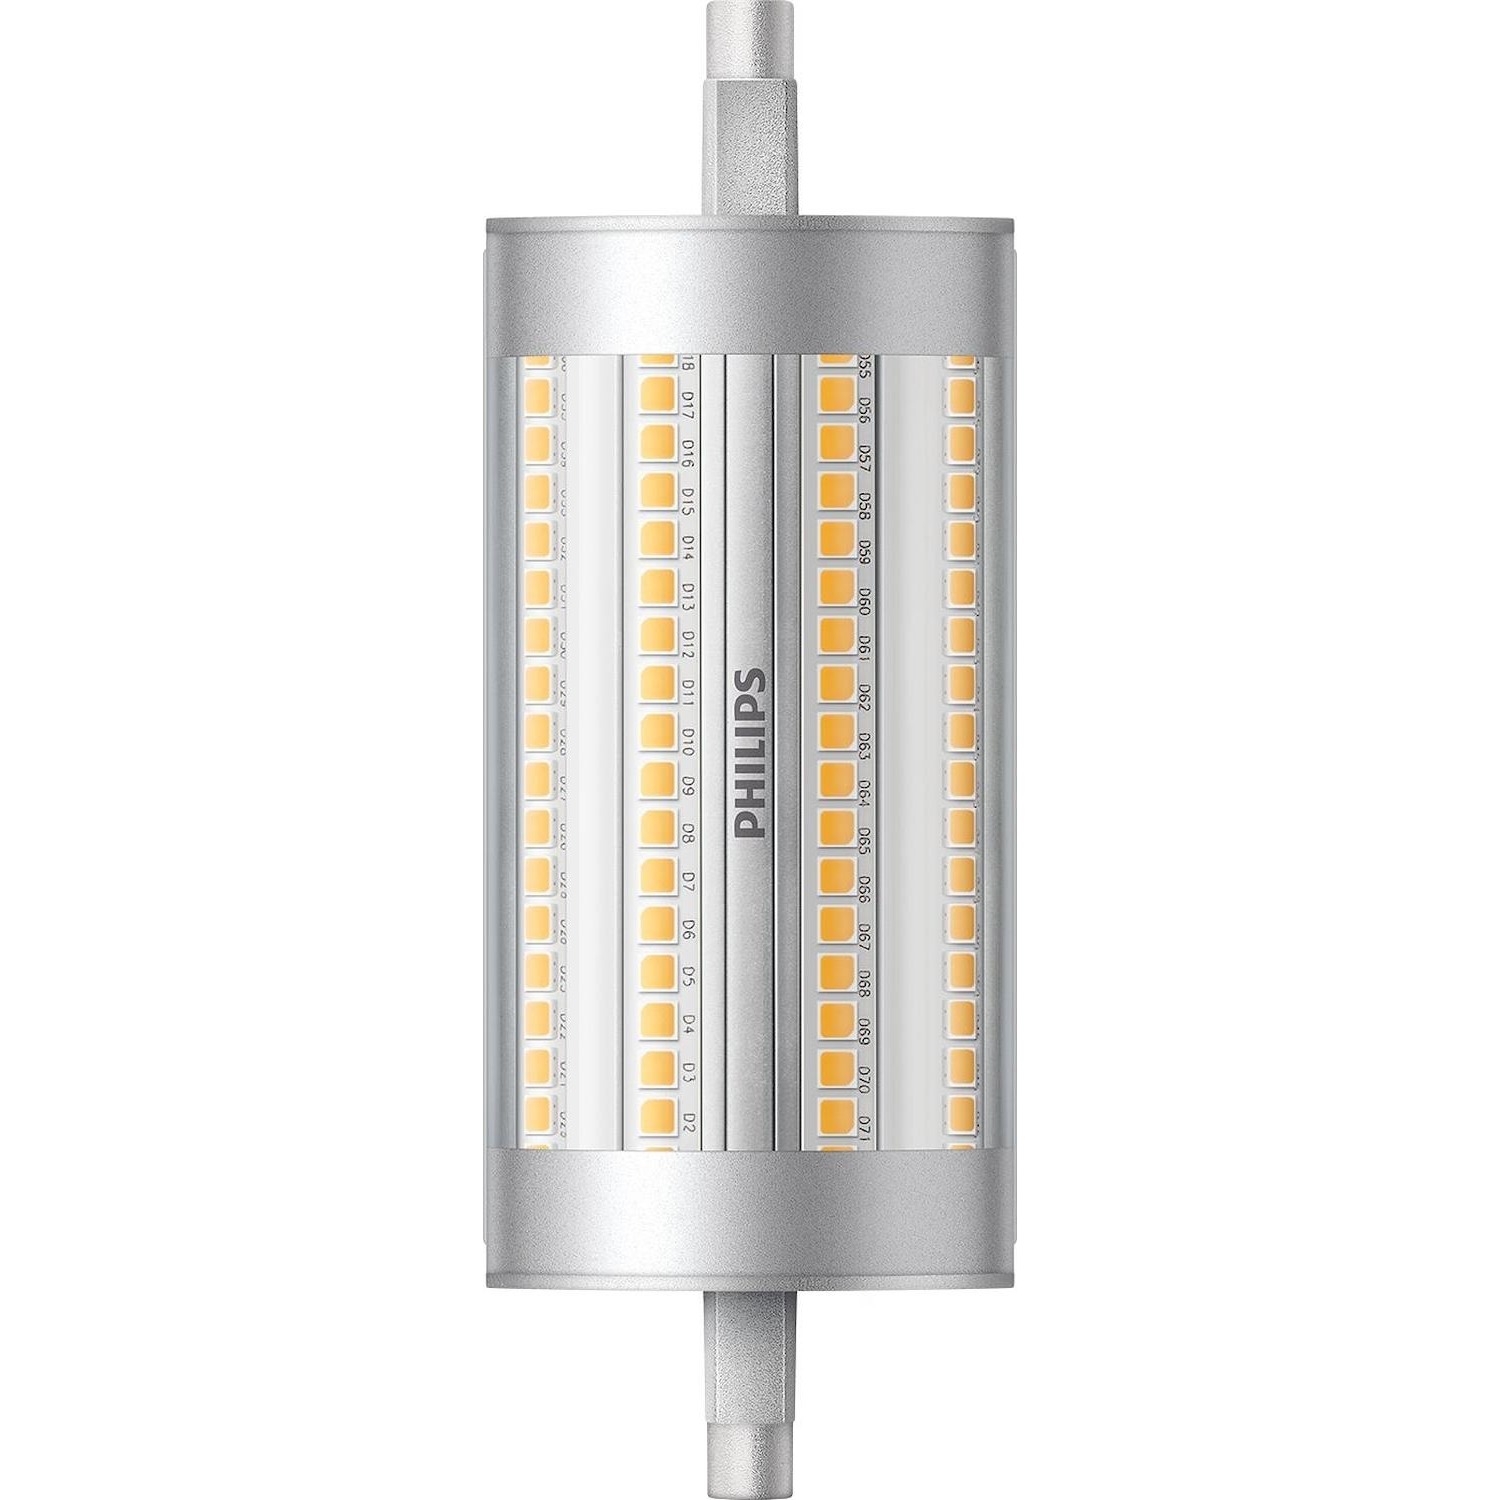 Immagine per Lampadina Philips LED R7s 150W da DIMOStore